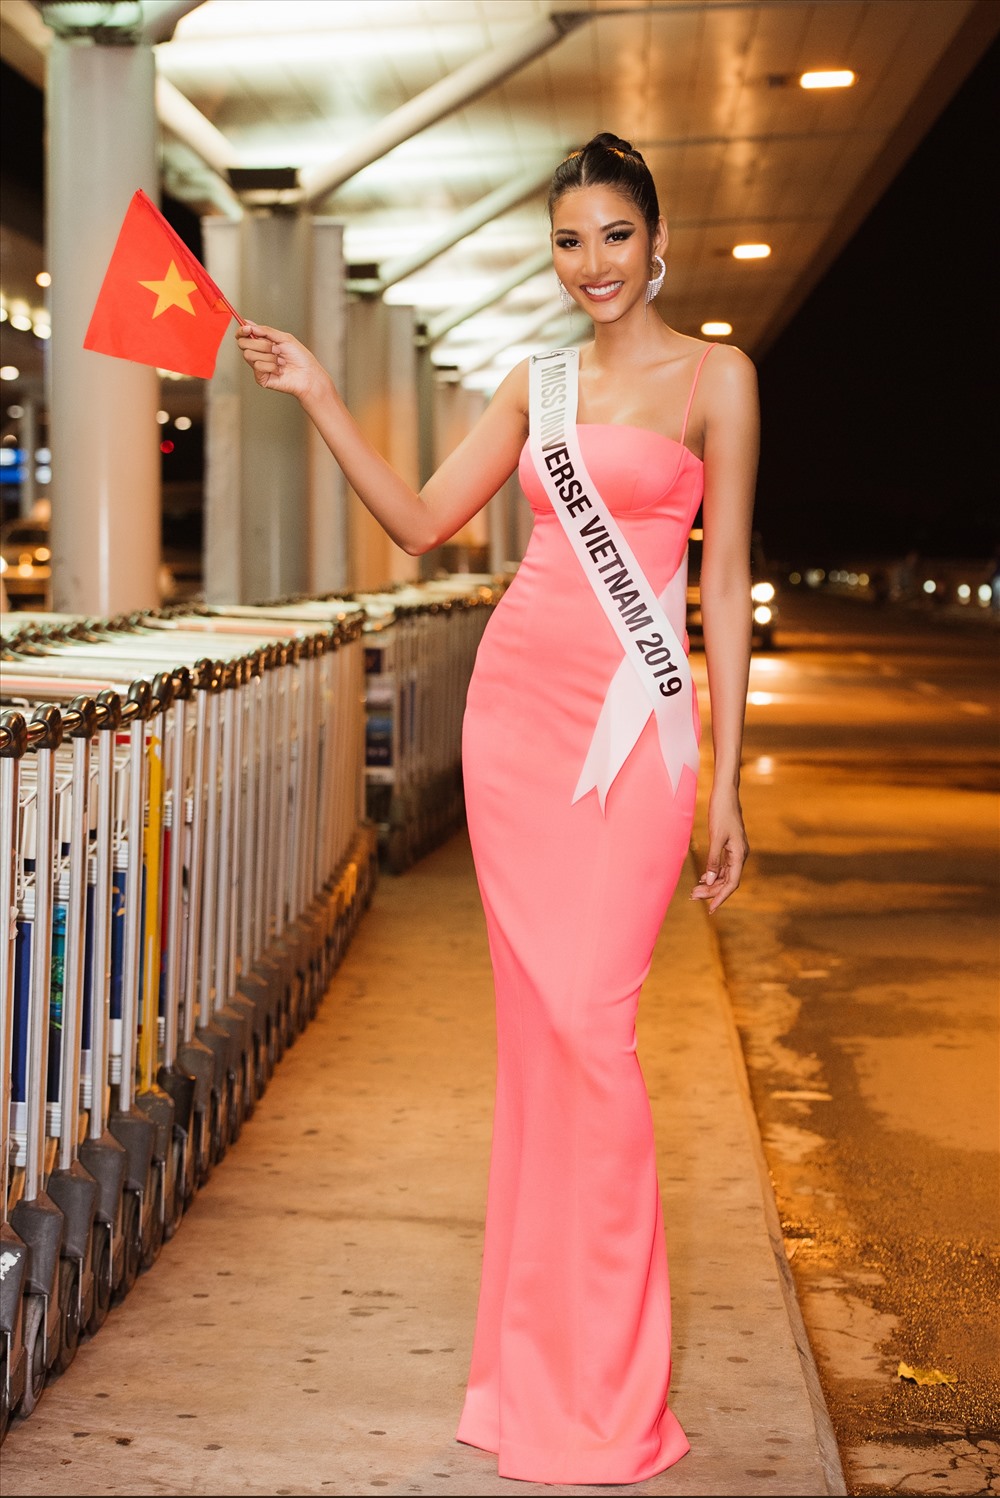 Cuộc thi Miss Universe 2019 sẽ được diễn ra trong 10 ngày từ 28.11 - 8.12 tại Atlanta, Georgia, Hoa Kỳ. Hơn 90 cô gái xinh đẹp đến từ khắp nơi trên thế giới sẽ tranh tài để tìm ra người chiến thắng. Đêm chung kết được tổ chức vào sáng ngày 8.12. Đương kim Hoa hậu Hoàn vũ 2018 Catriona Gray đến từ Philippines sẽ trao lại vương miện cho người kế nhiệm trong đêm chung kết. Ảnh: Quang Đức.